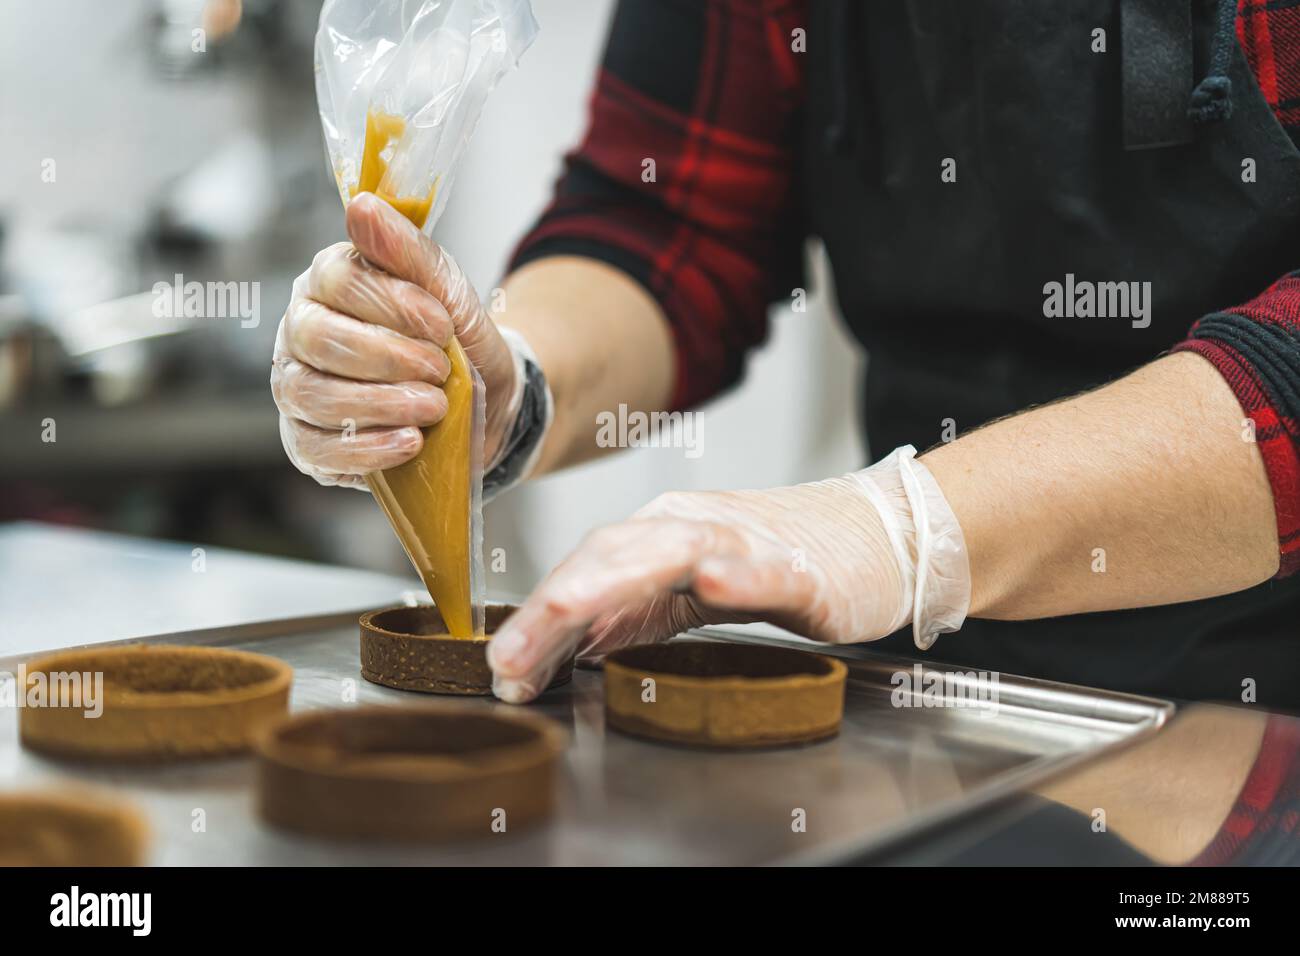 baker piping caramel en forme de cercle sur un plateau, processus de décodage des biscuits. Photo de haute qualité Banque D'Images